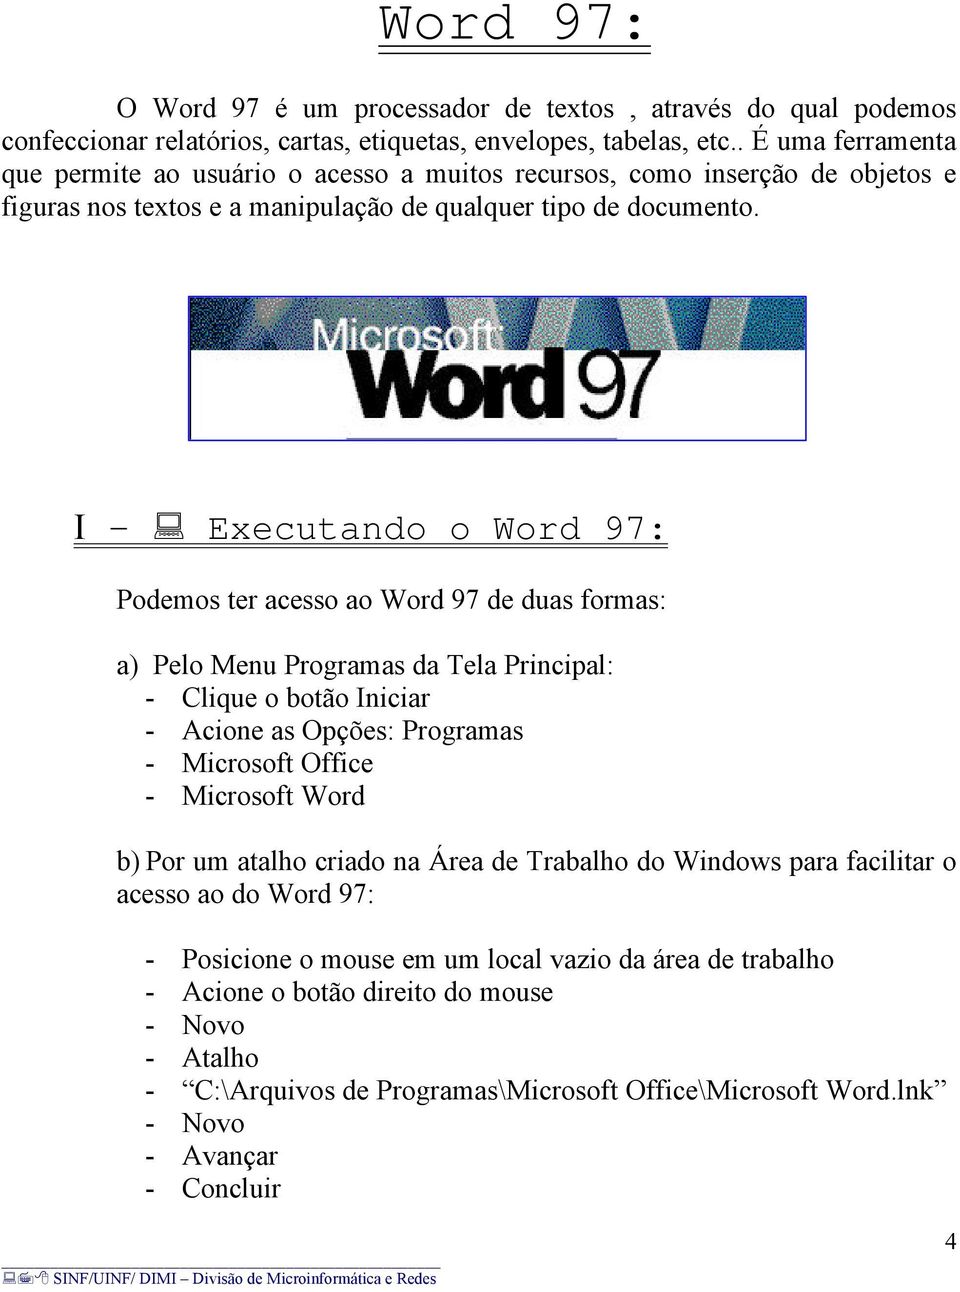 I - Executando o Word 97: Podemos ter acesso ao Word 97 de duas formas: a) Pelo Menu Programas da Tela Principal: - Clique o botão Iniciar - Acione as Opções: Programas - Microsoft Office - Microsoft